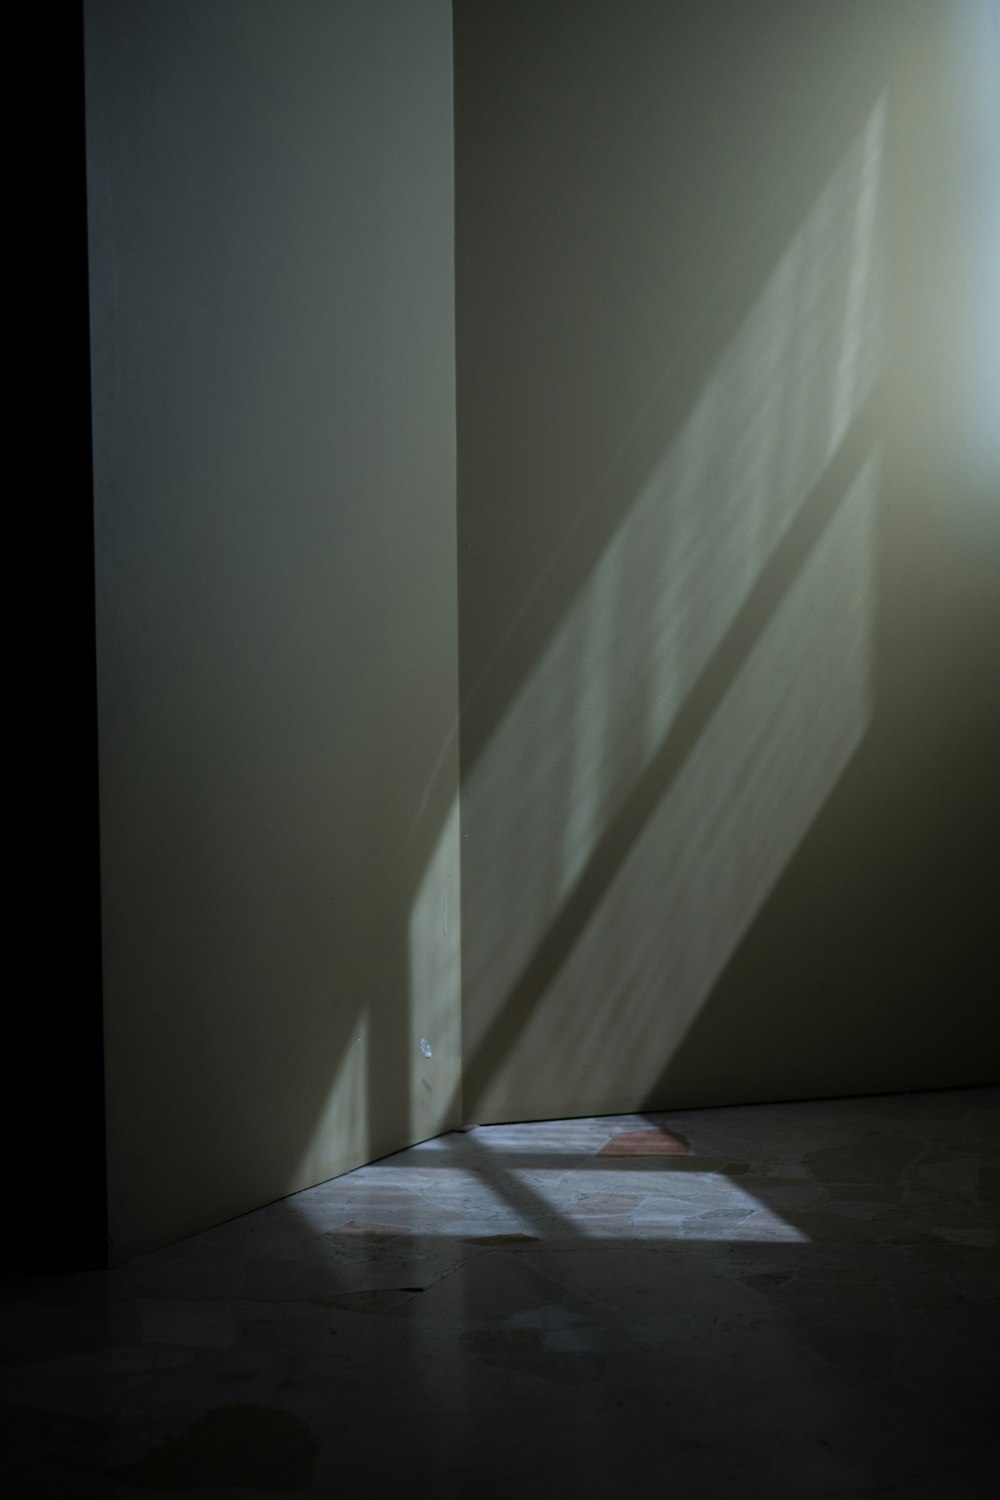 Sombras en una pared de la luz que entra por una ventana.